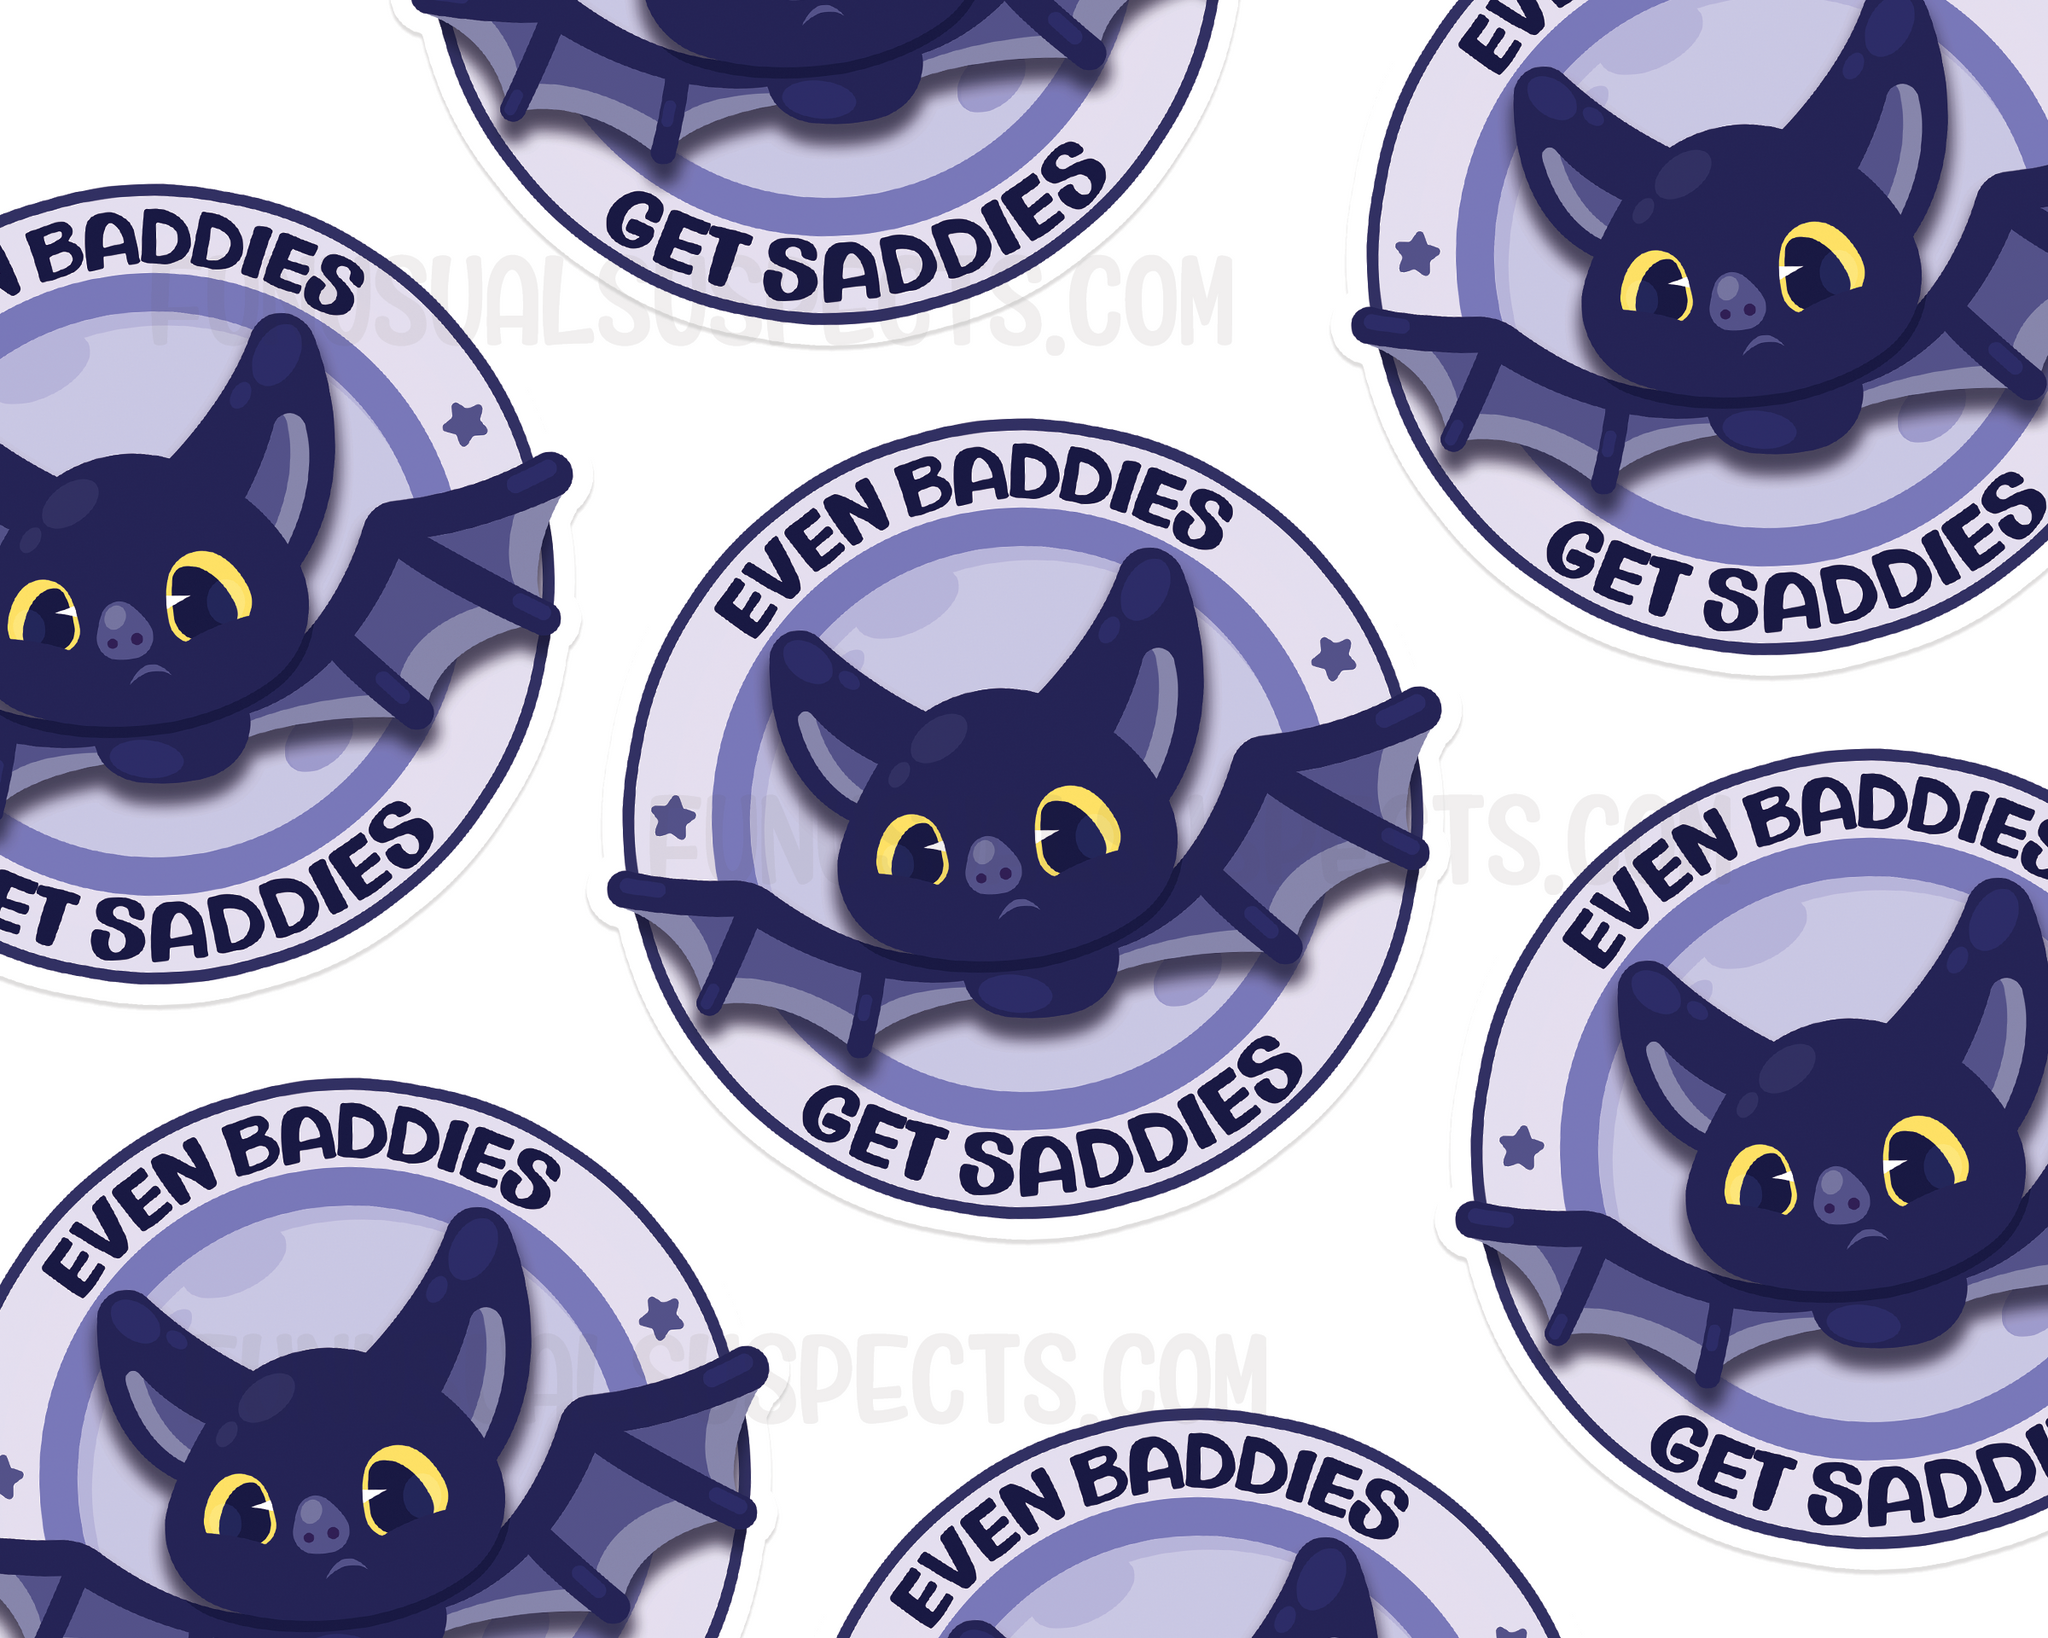 Bat Baddies Get Saddies Sticker